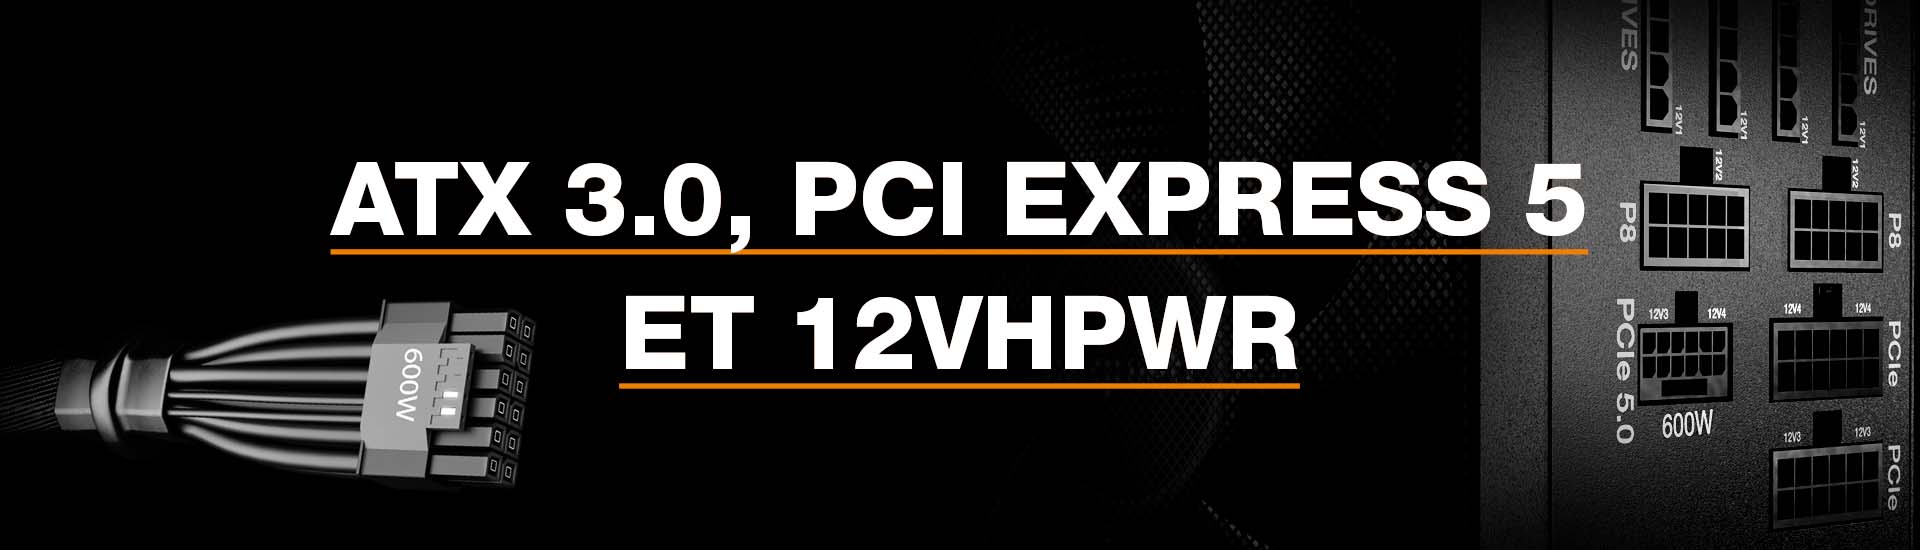 ATX 3.0, PCI Express 5 et 12VHPWR